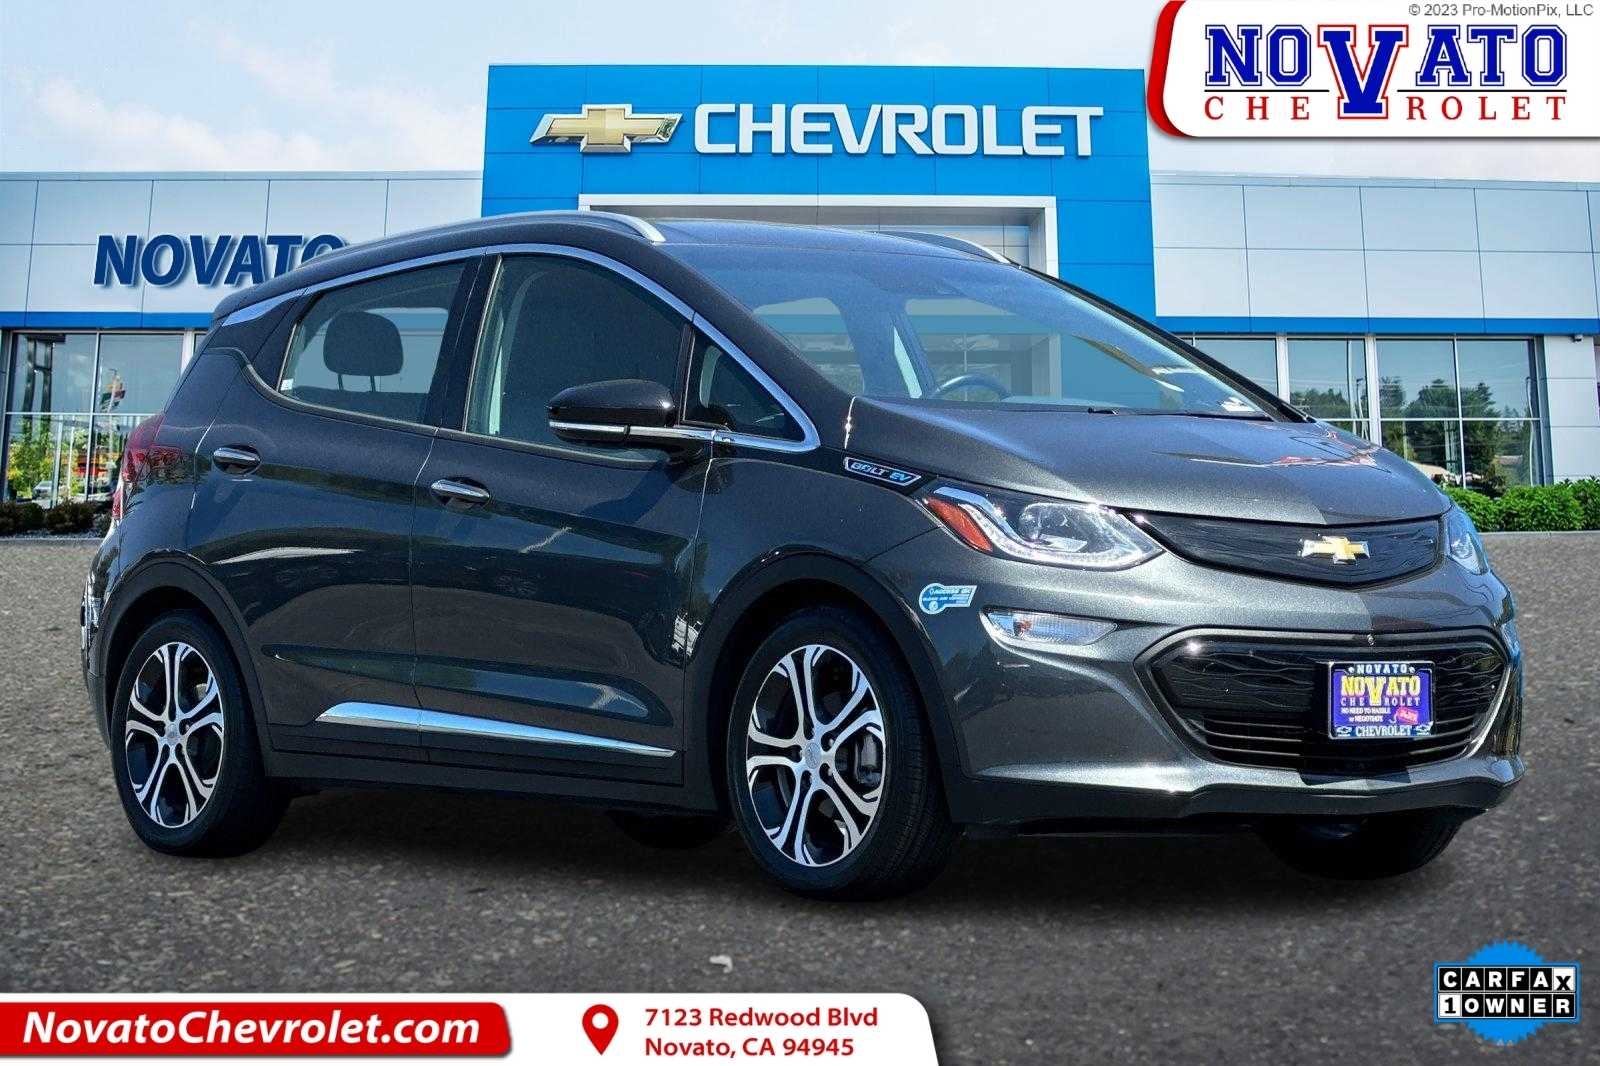 2021 Chevrolet Bolt EV Novato CA